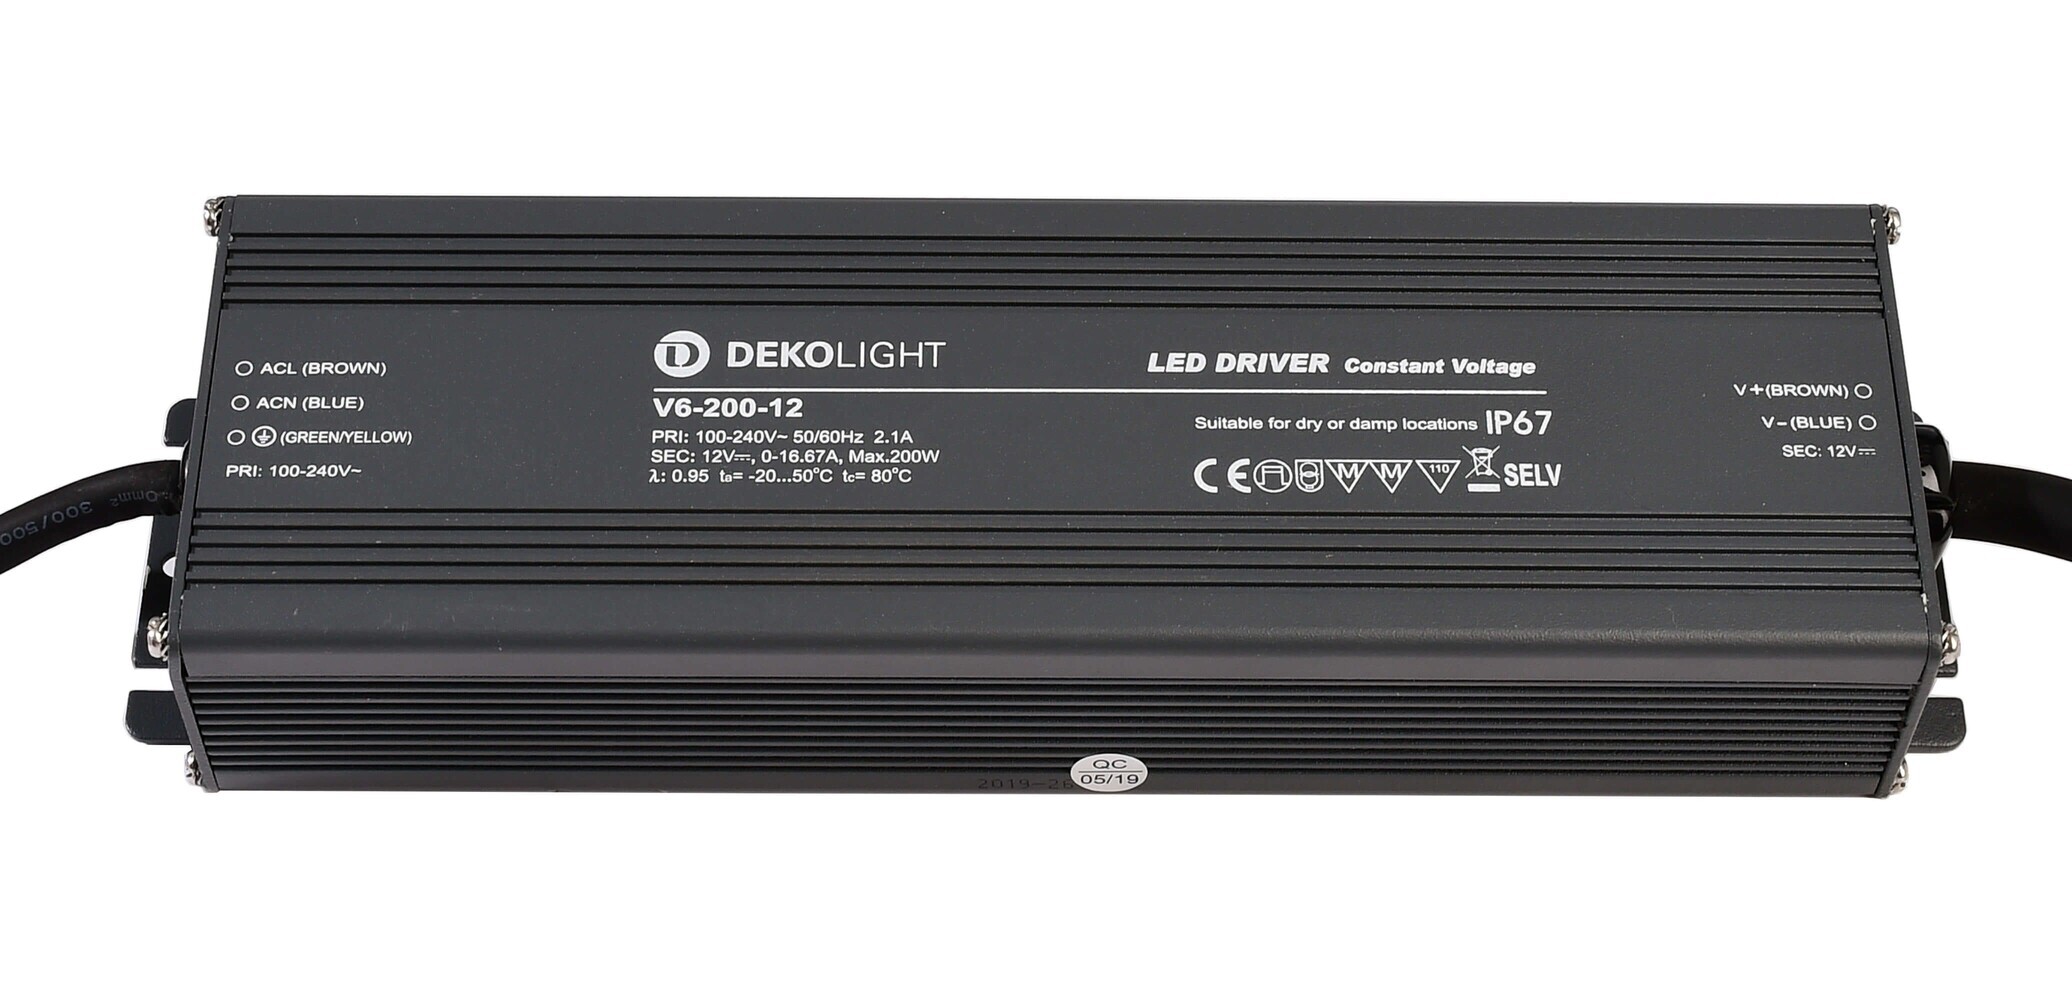 Hochwertiges und effizientes LED Netzteil der Marke Deko-Light mit konstanter Spannung